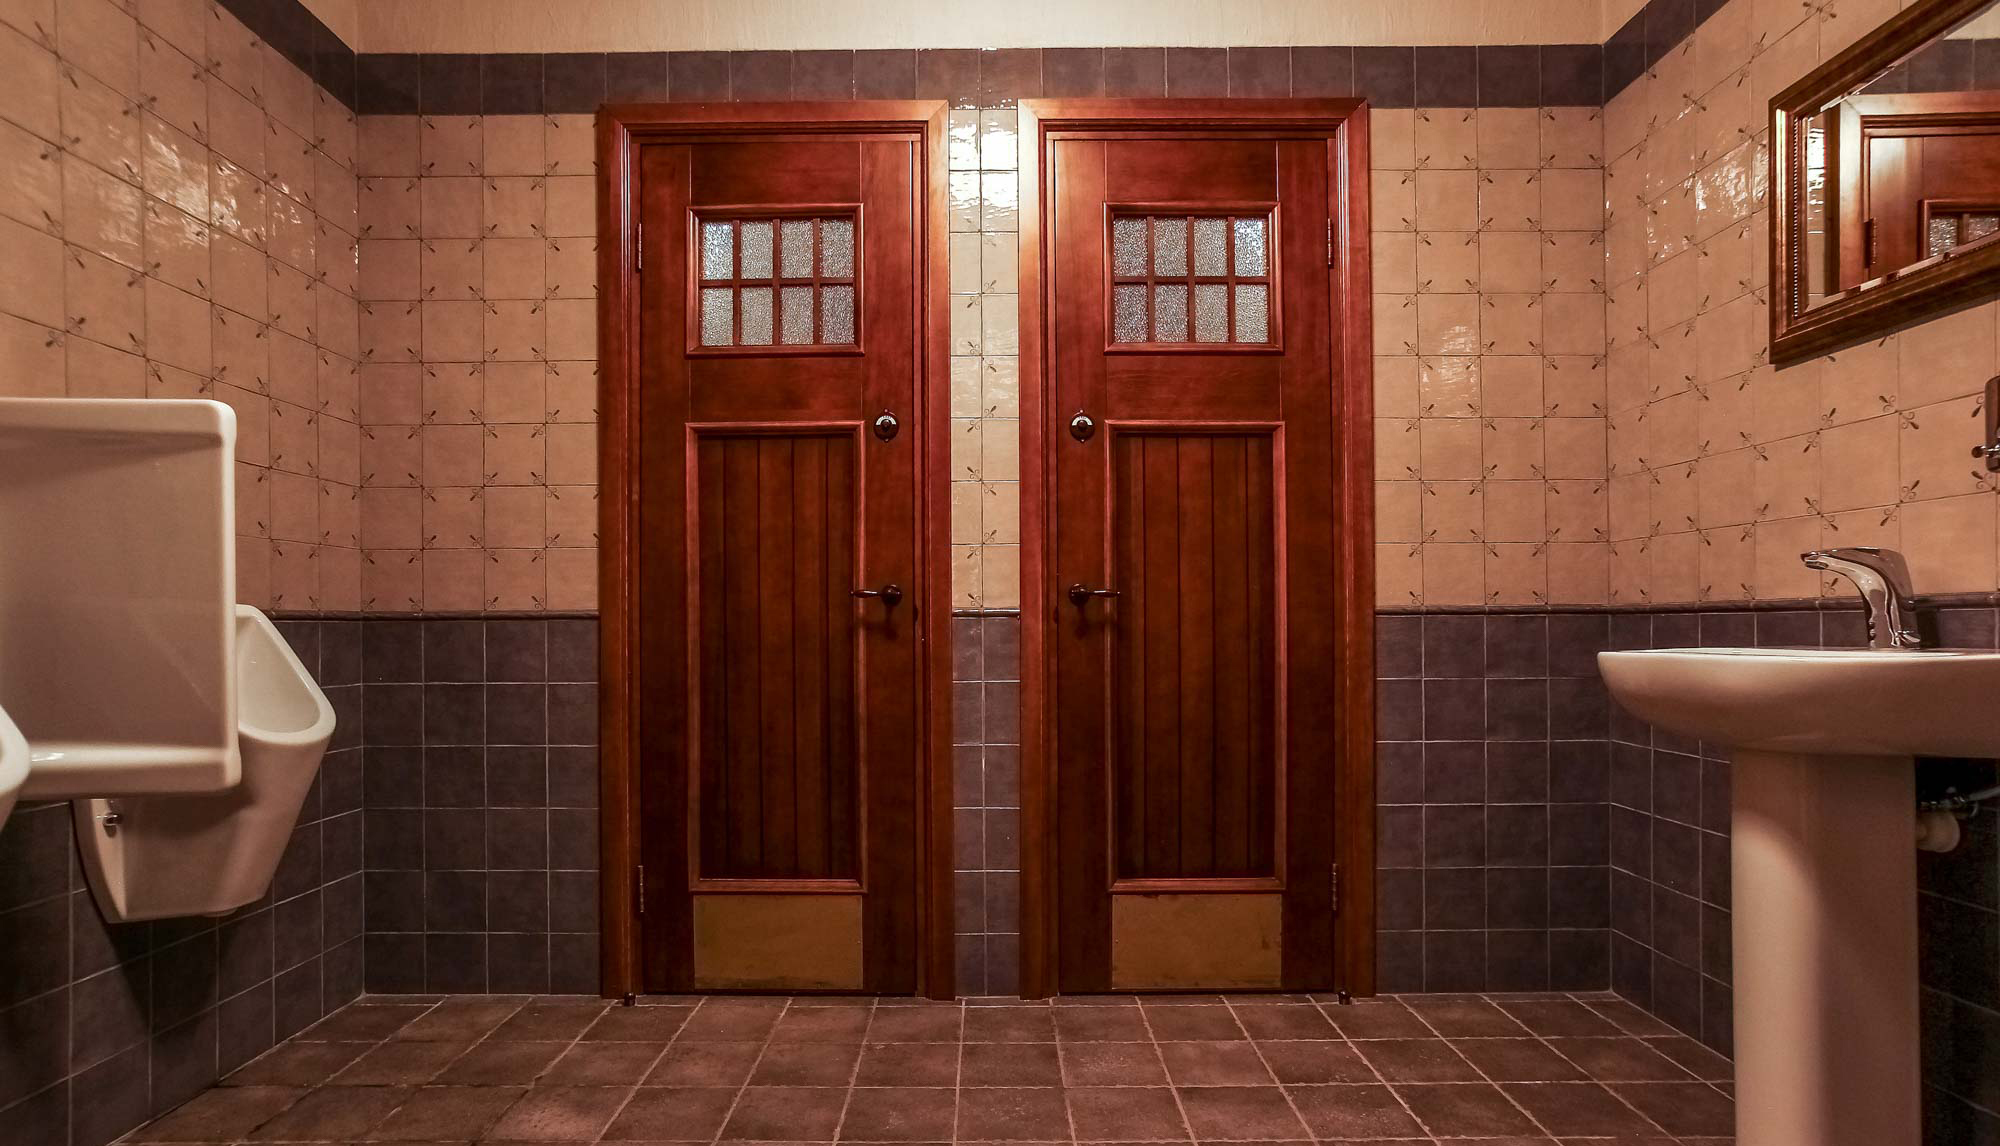 Леруа двери ванная туалет. Двери ванна туалет 60х200. Дверь в ванную. Дверь для ванной комнаты и туалета. Межкомнатные двери в ванную и туалет.